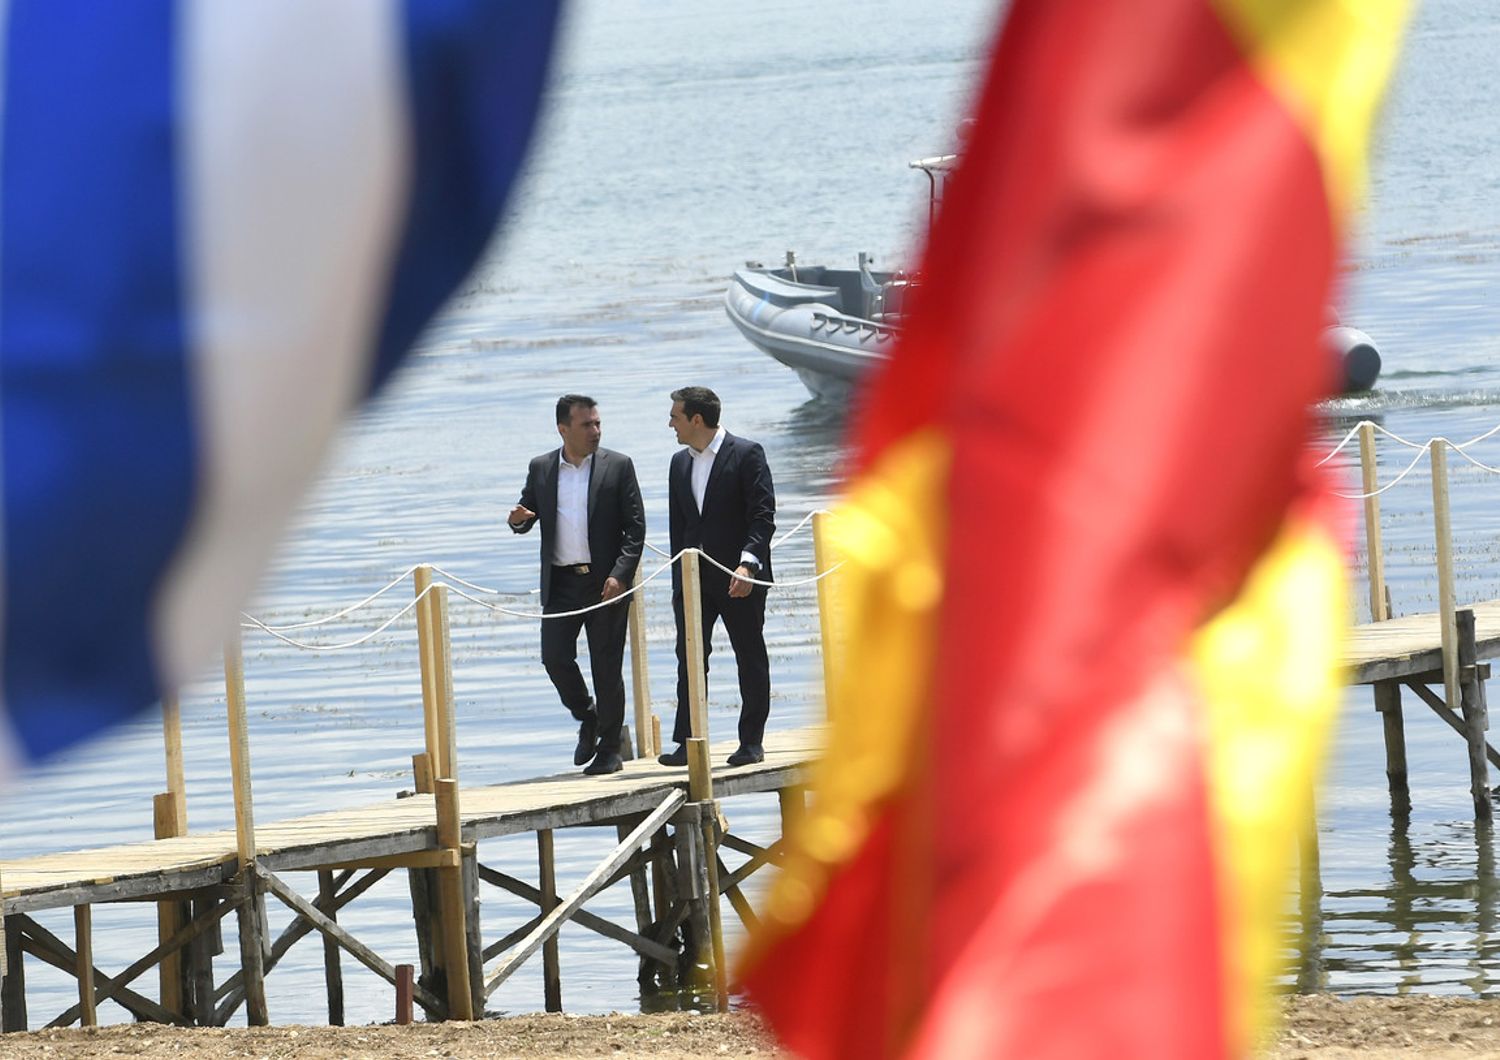 &nbsp; Il primo ministro grego Alexis Tsipras (a sinistra) e il suo omonimo macedone Zoran Zaev (a destra), poco prima dello storico accordo sul nome della Macedonia